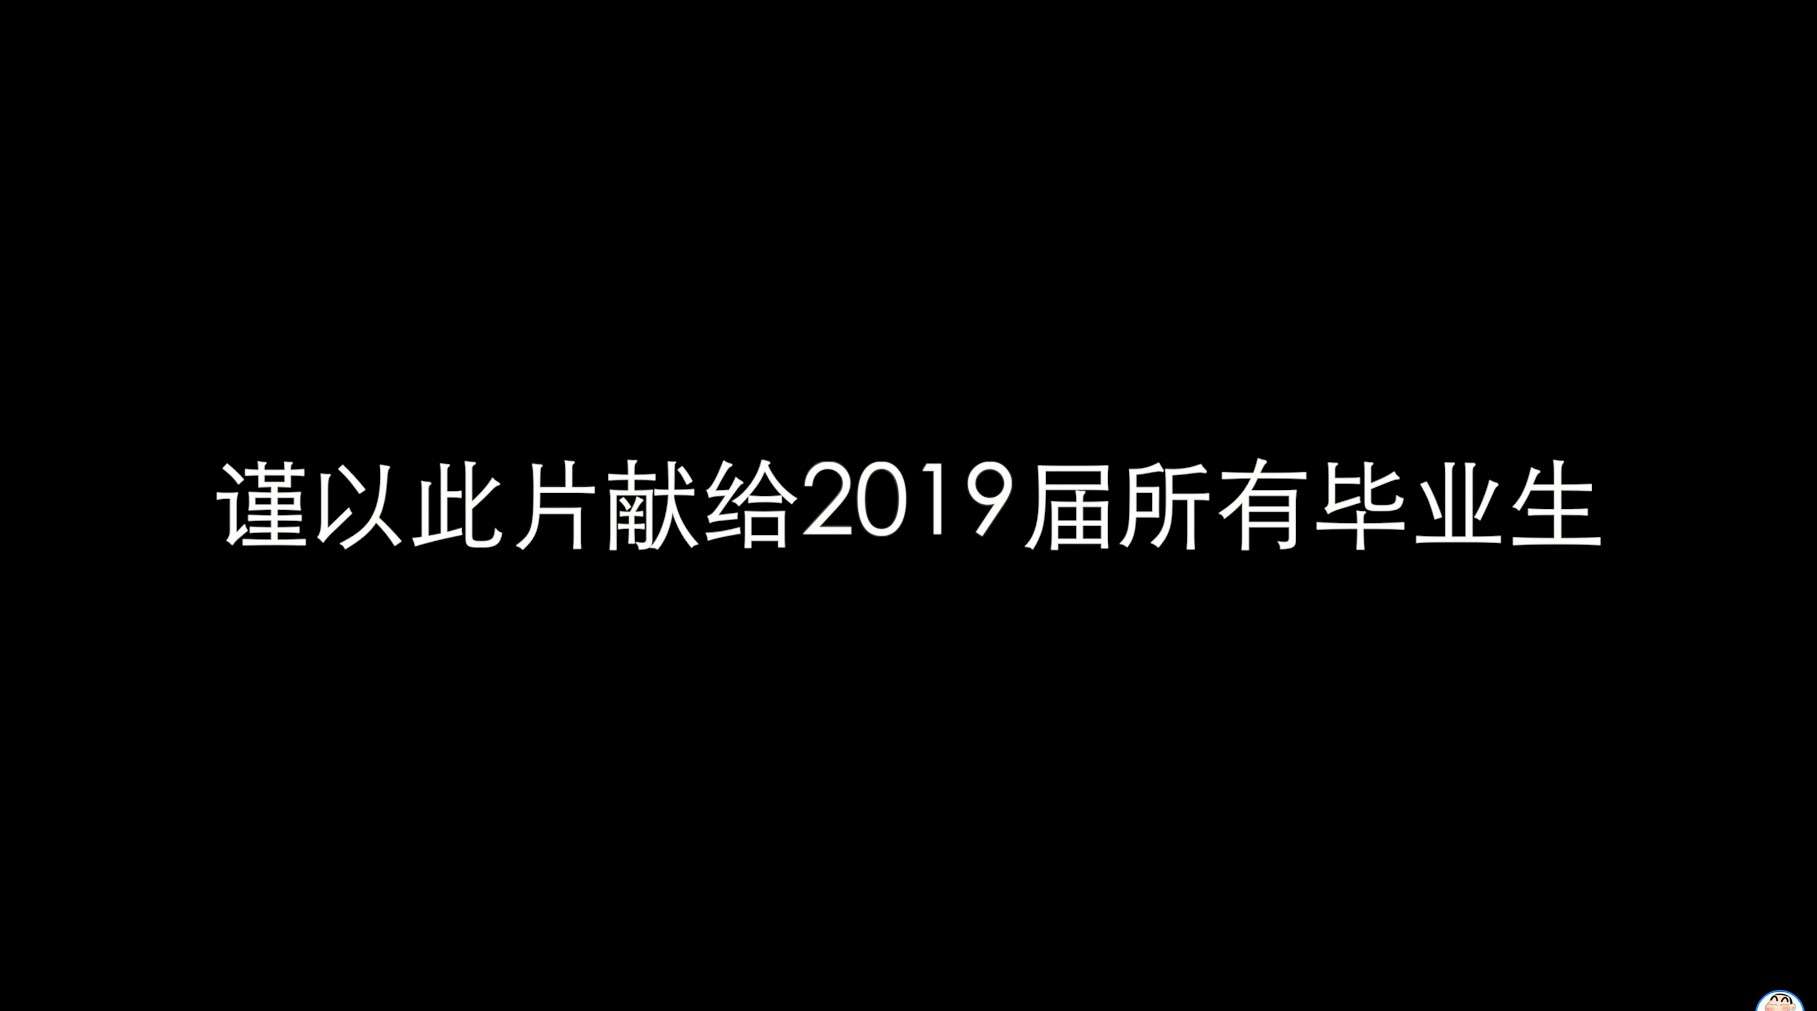 南京工业大学浦江学院2019届毕业典礼暖场宣传片